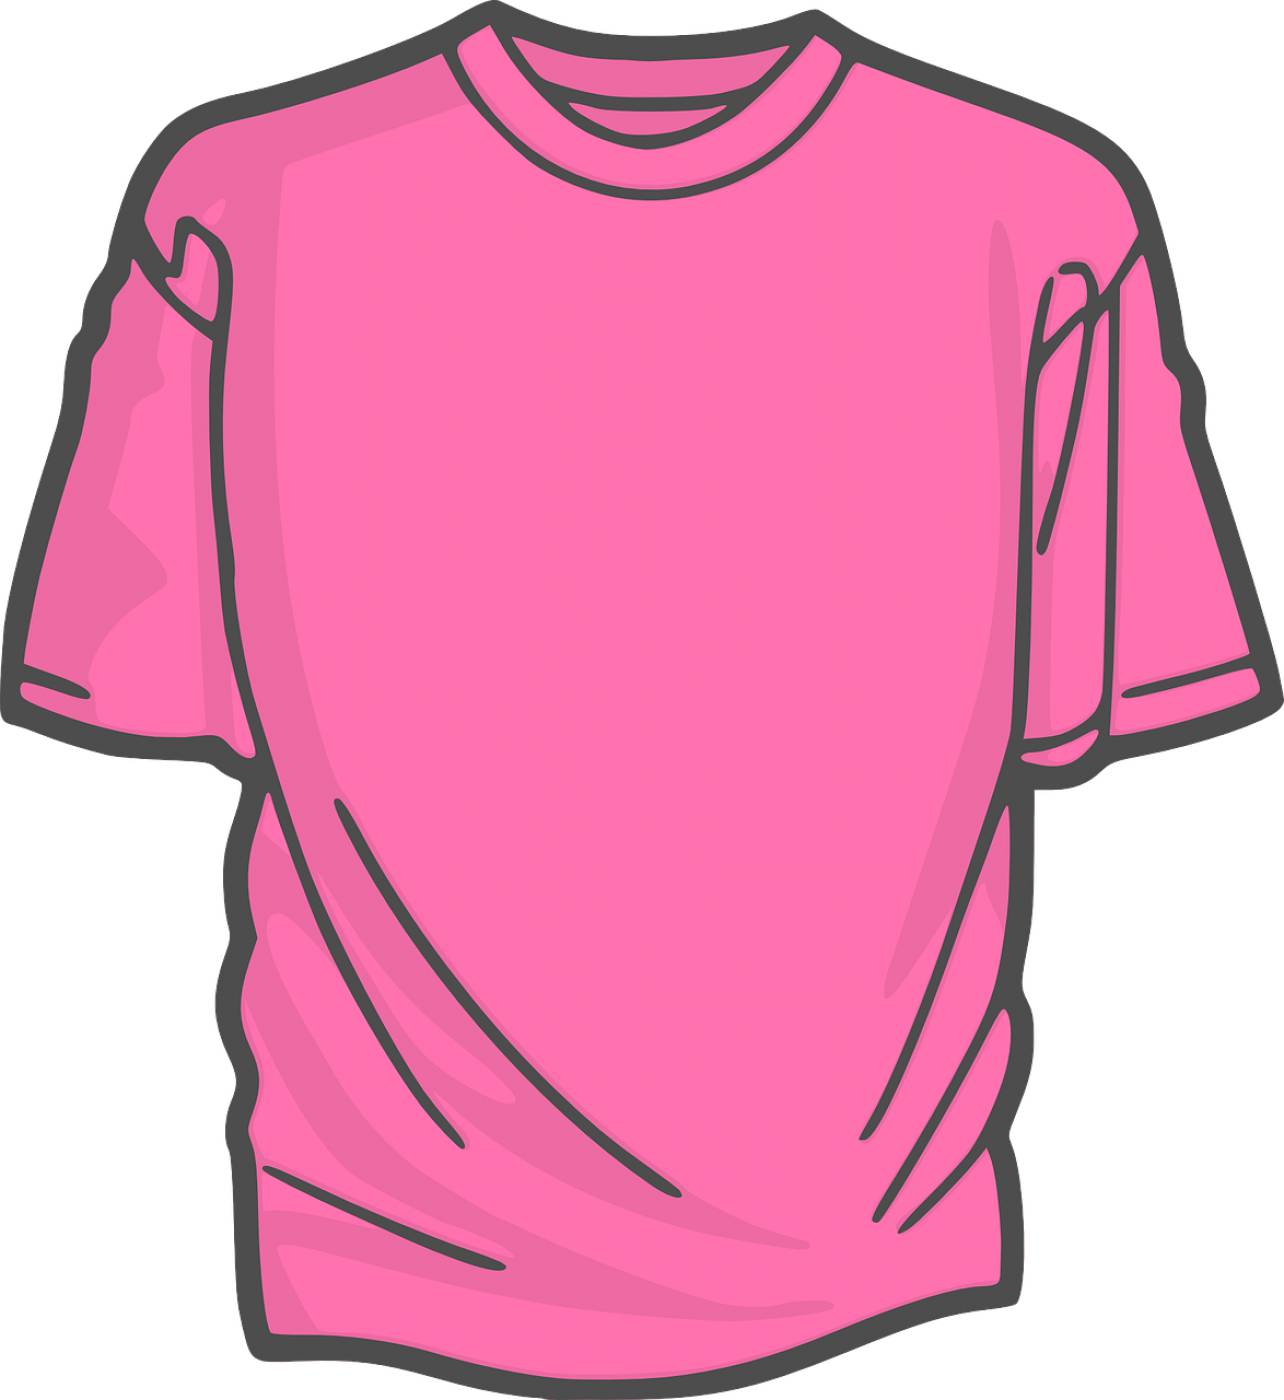 shirt pink t shirt jersey tee  svg vector